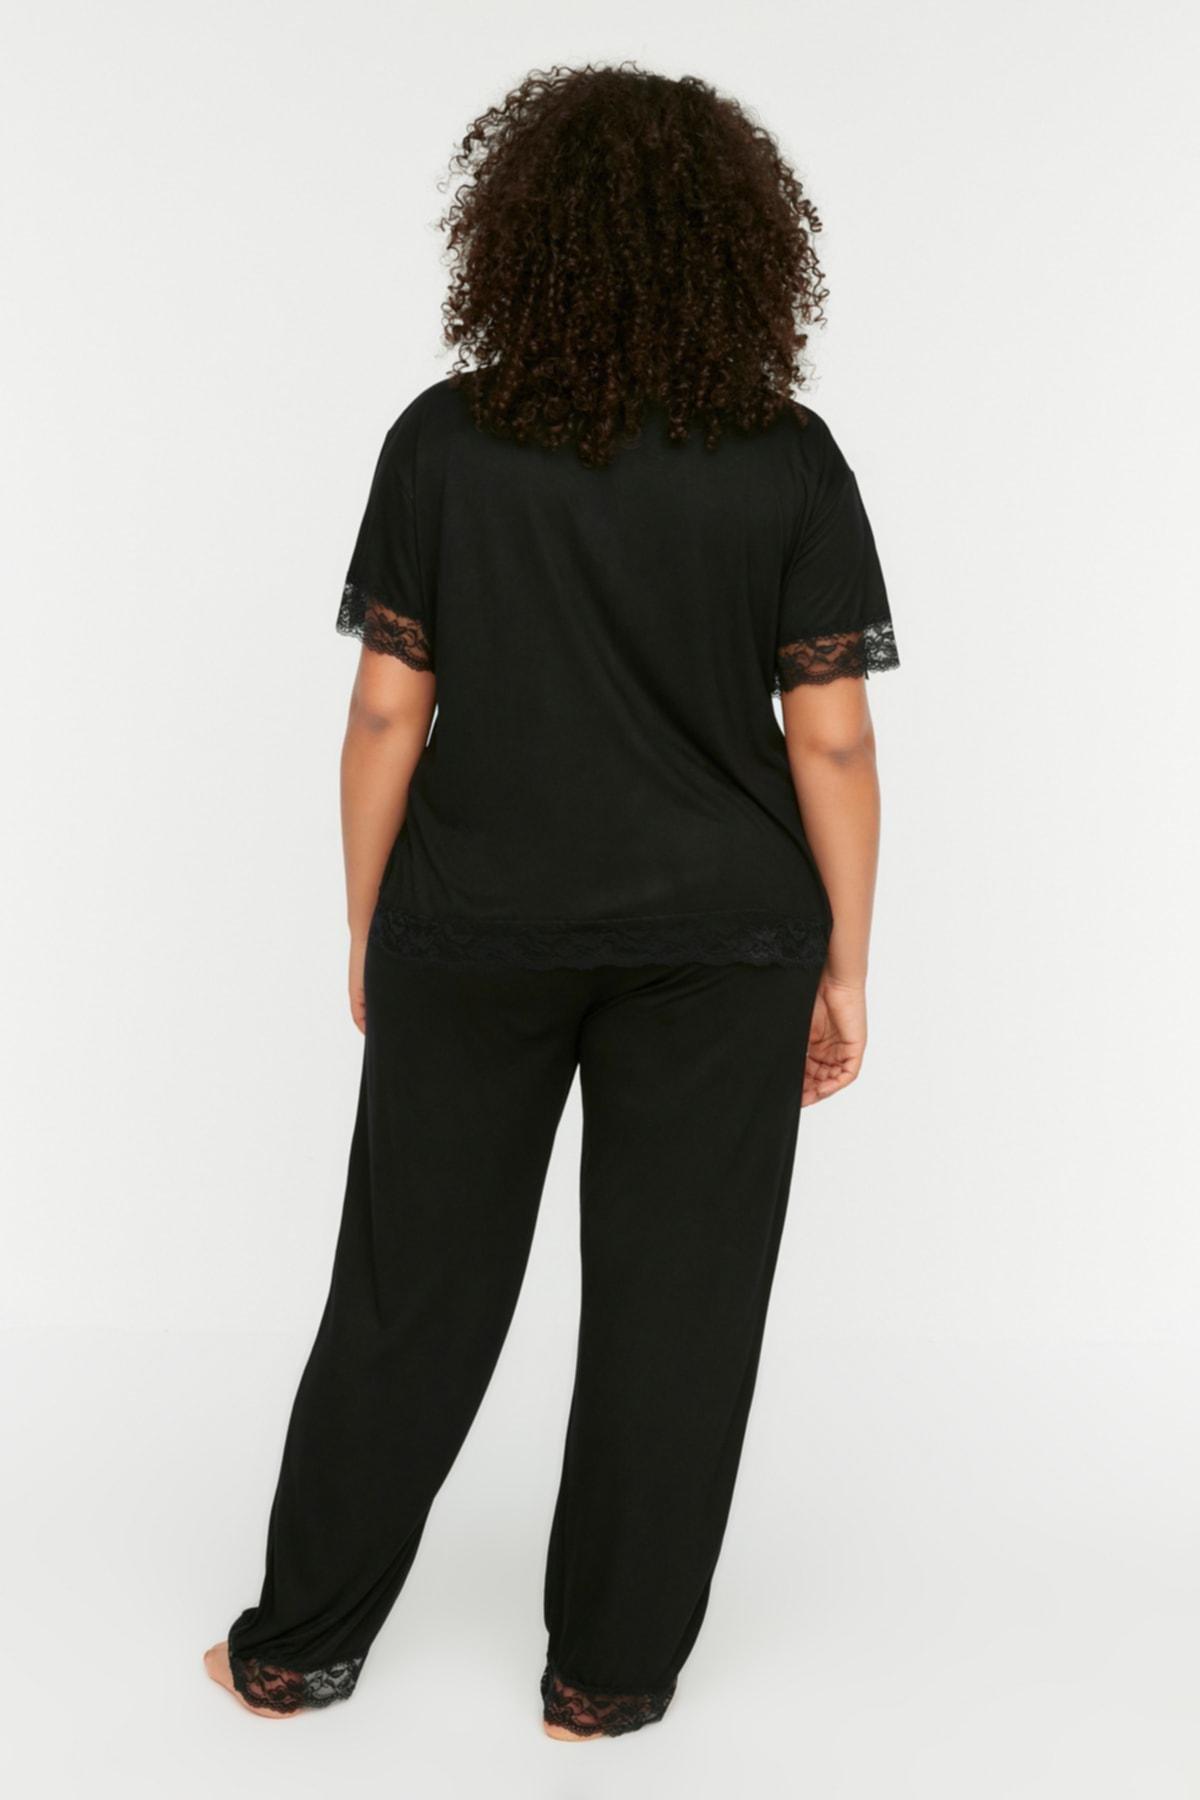 Trendyol - Black Polka Dot Plus Size Pajama Set